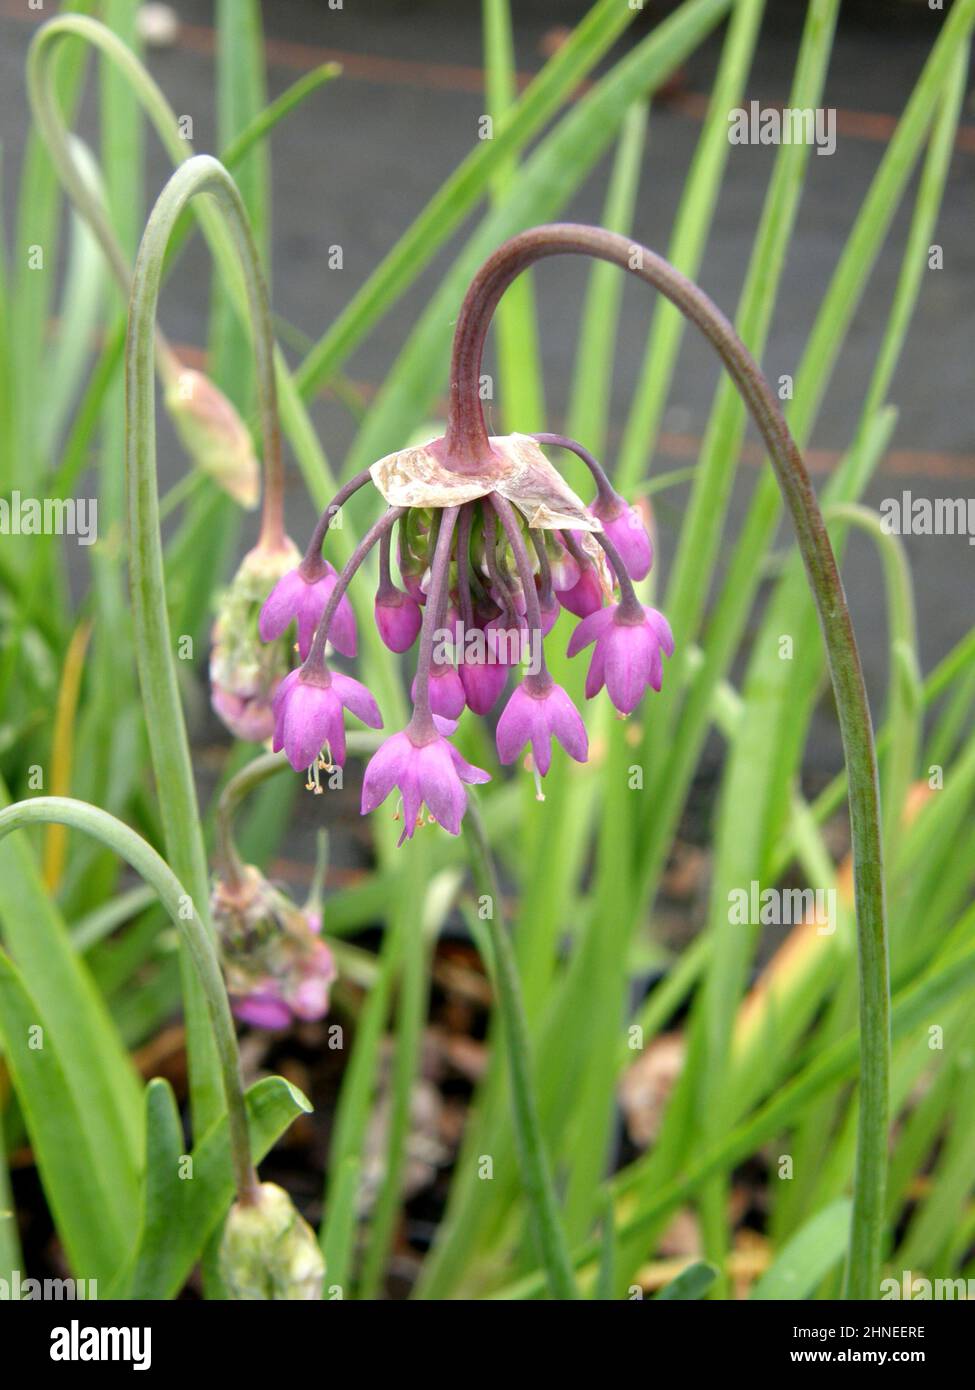 Lady's leek or nodding onion (Allium cernuum) blooms in a garden in June Stock Photo